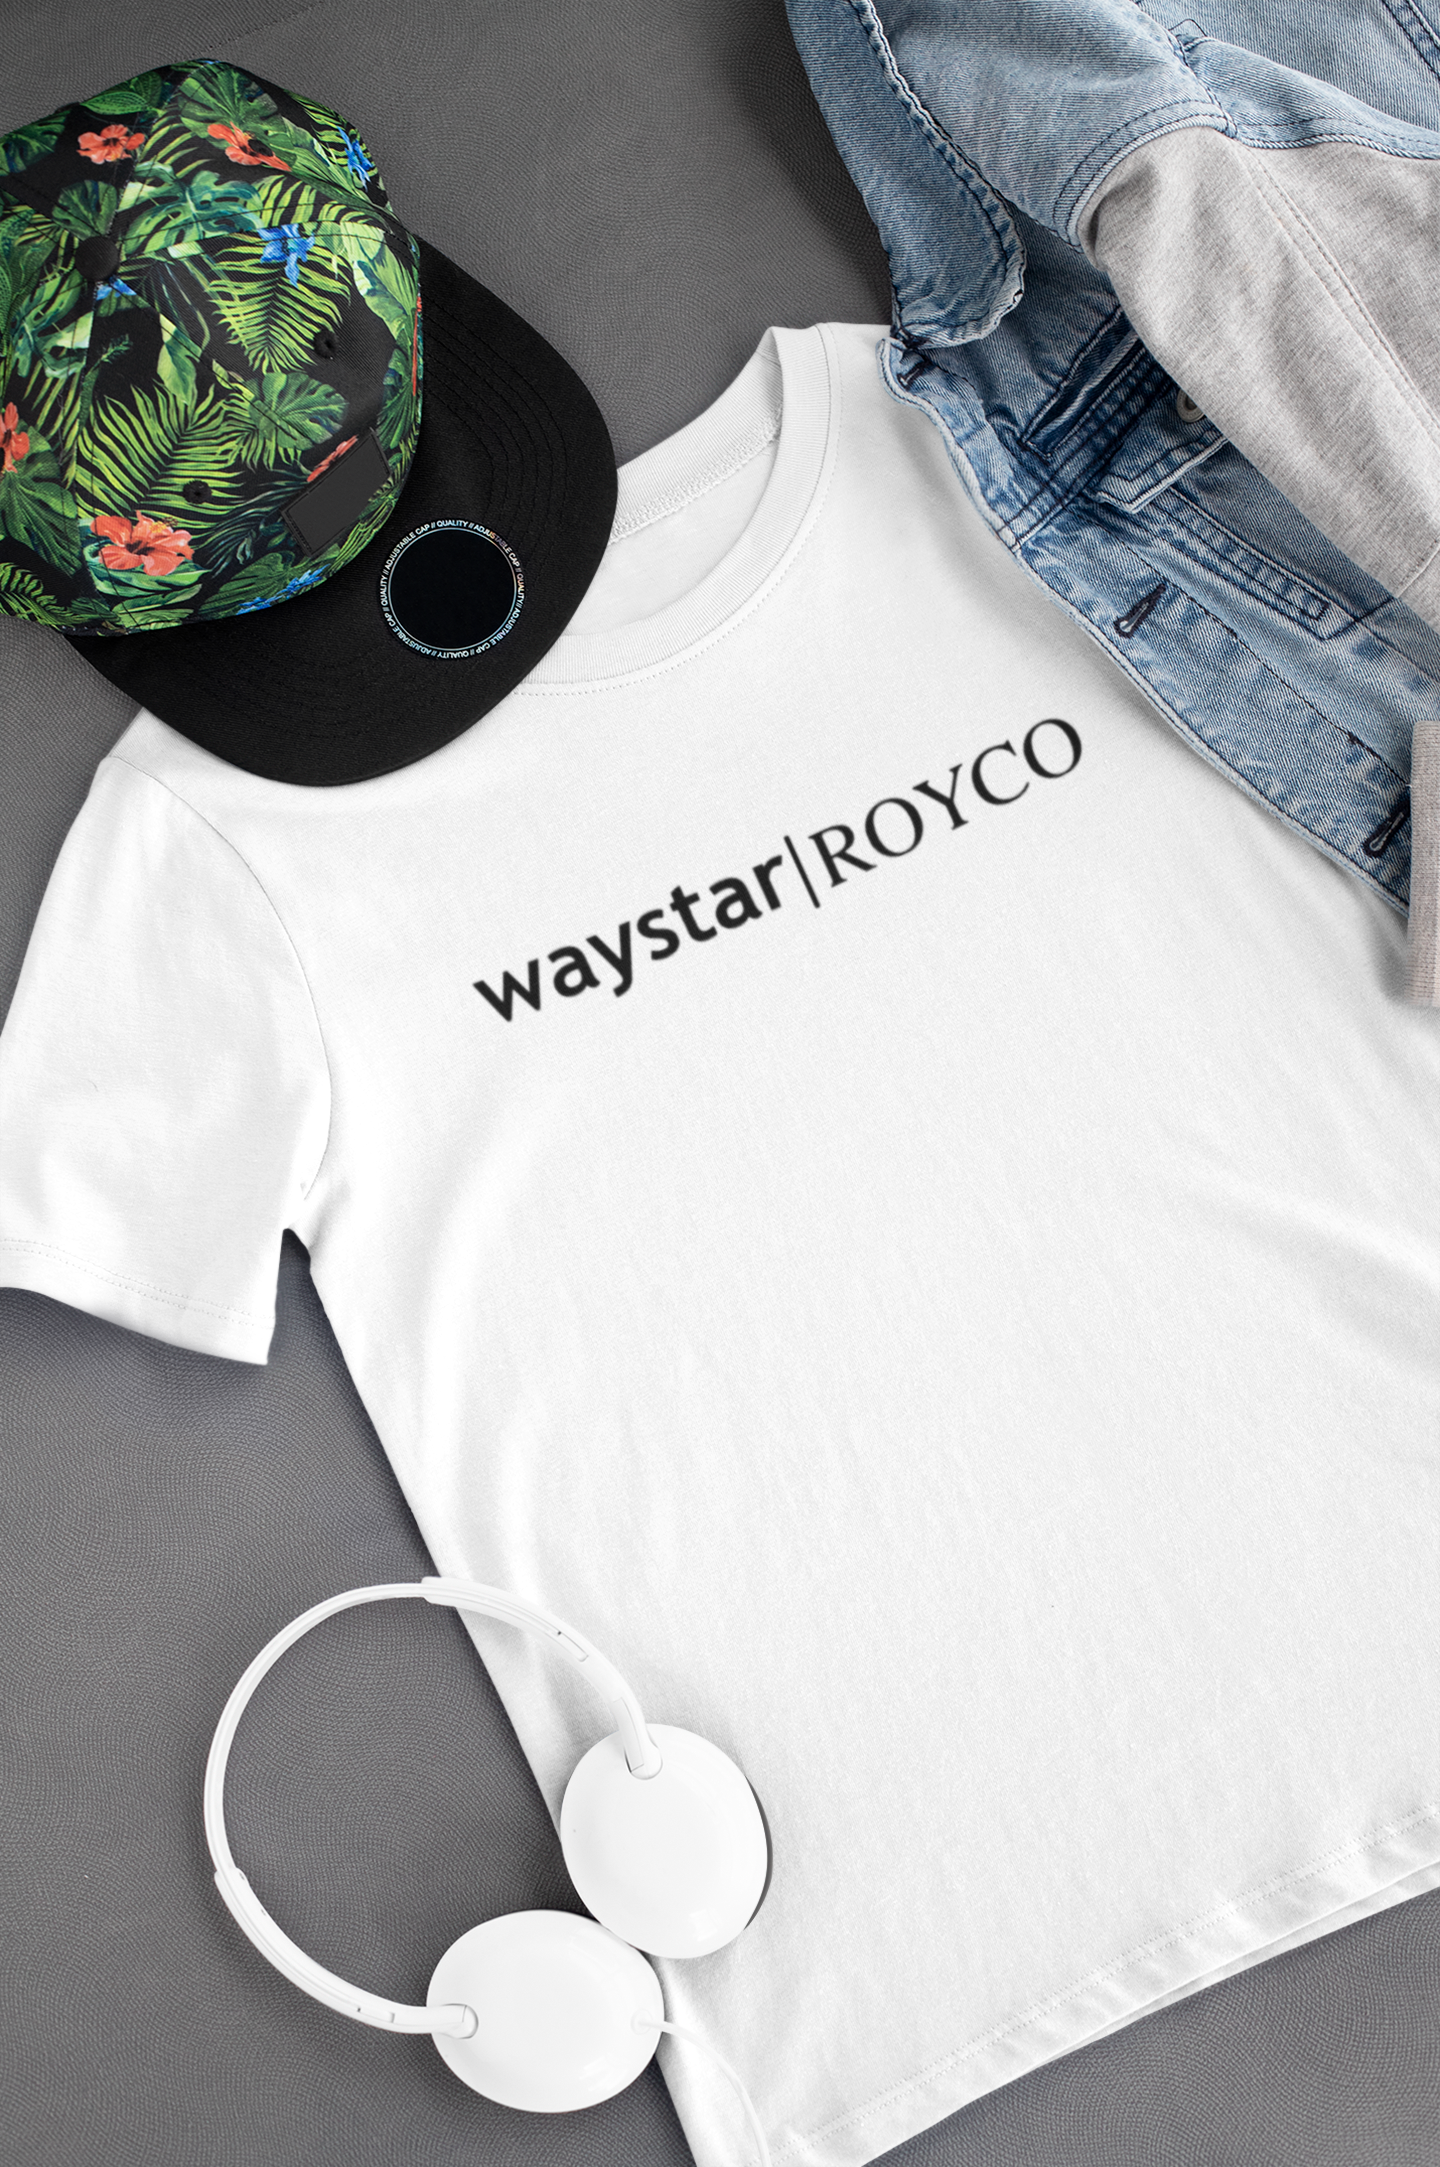 Camiseta "Waystar Royco" - Succession - Séries de TV